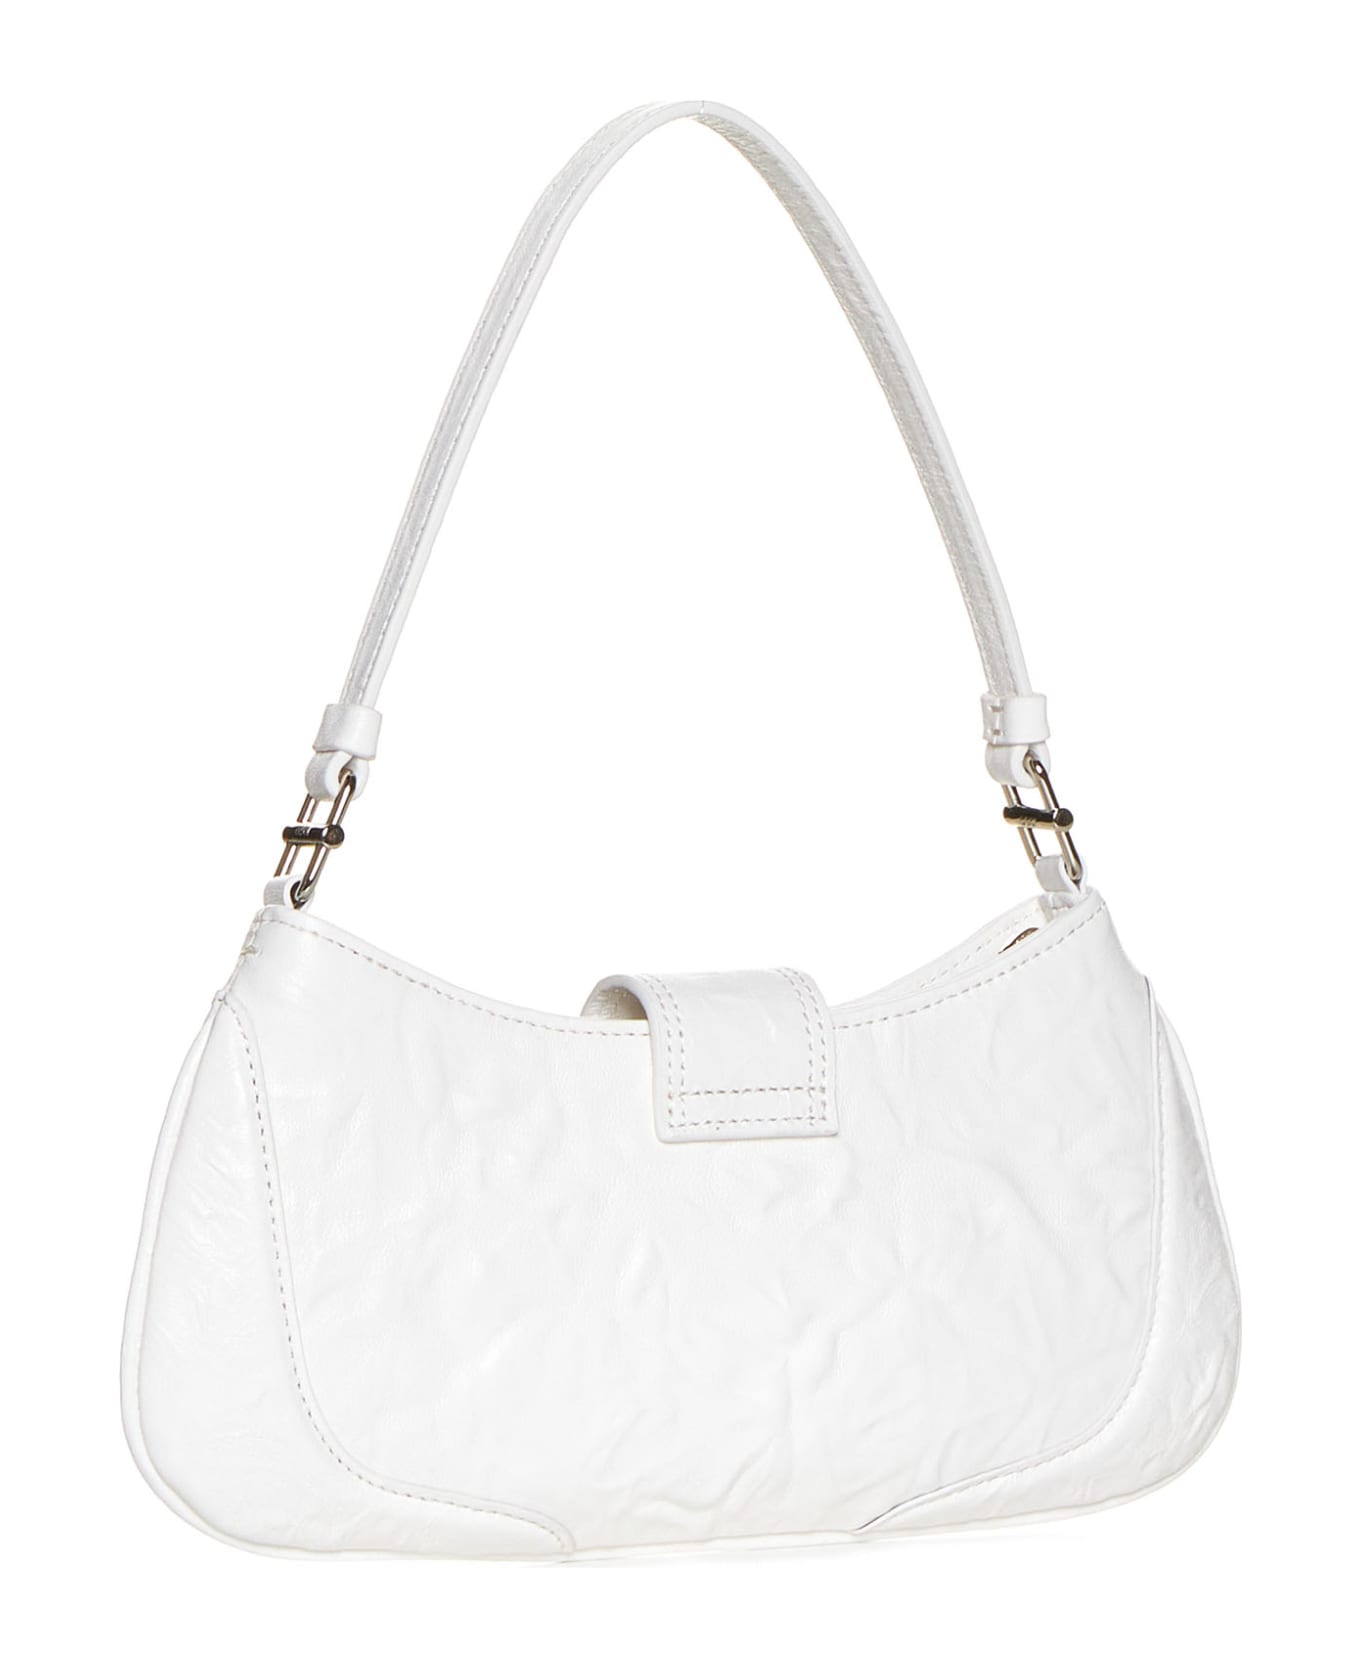 OSOI Shoulder Bag - Crinkle white トートバッグ